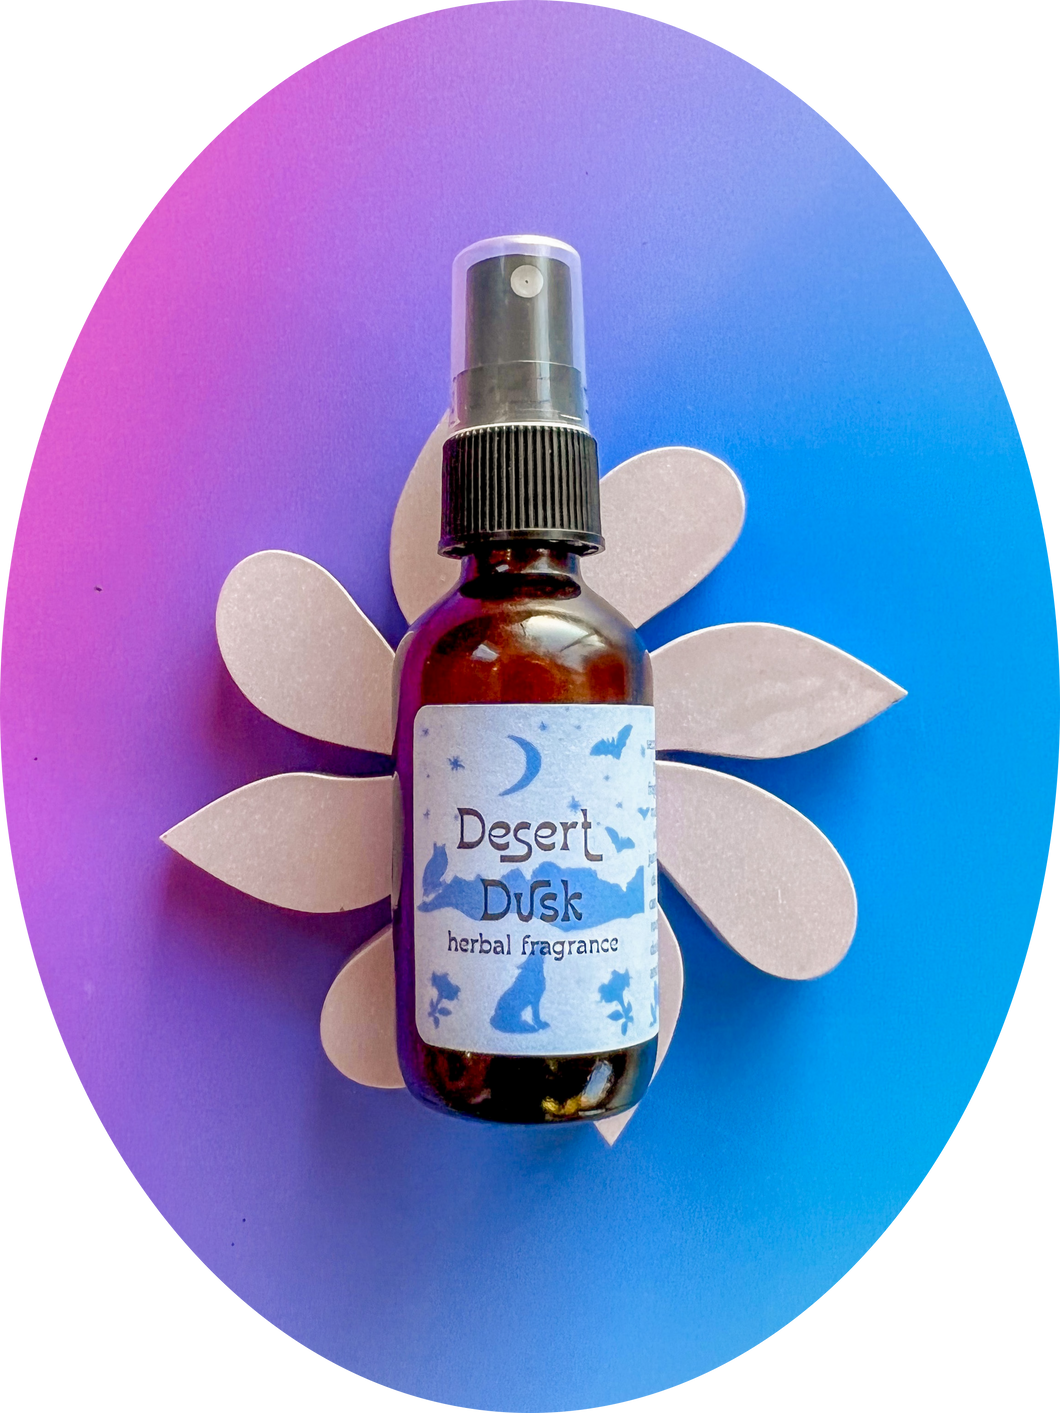 Desert Dusk botanical perfume spray